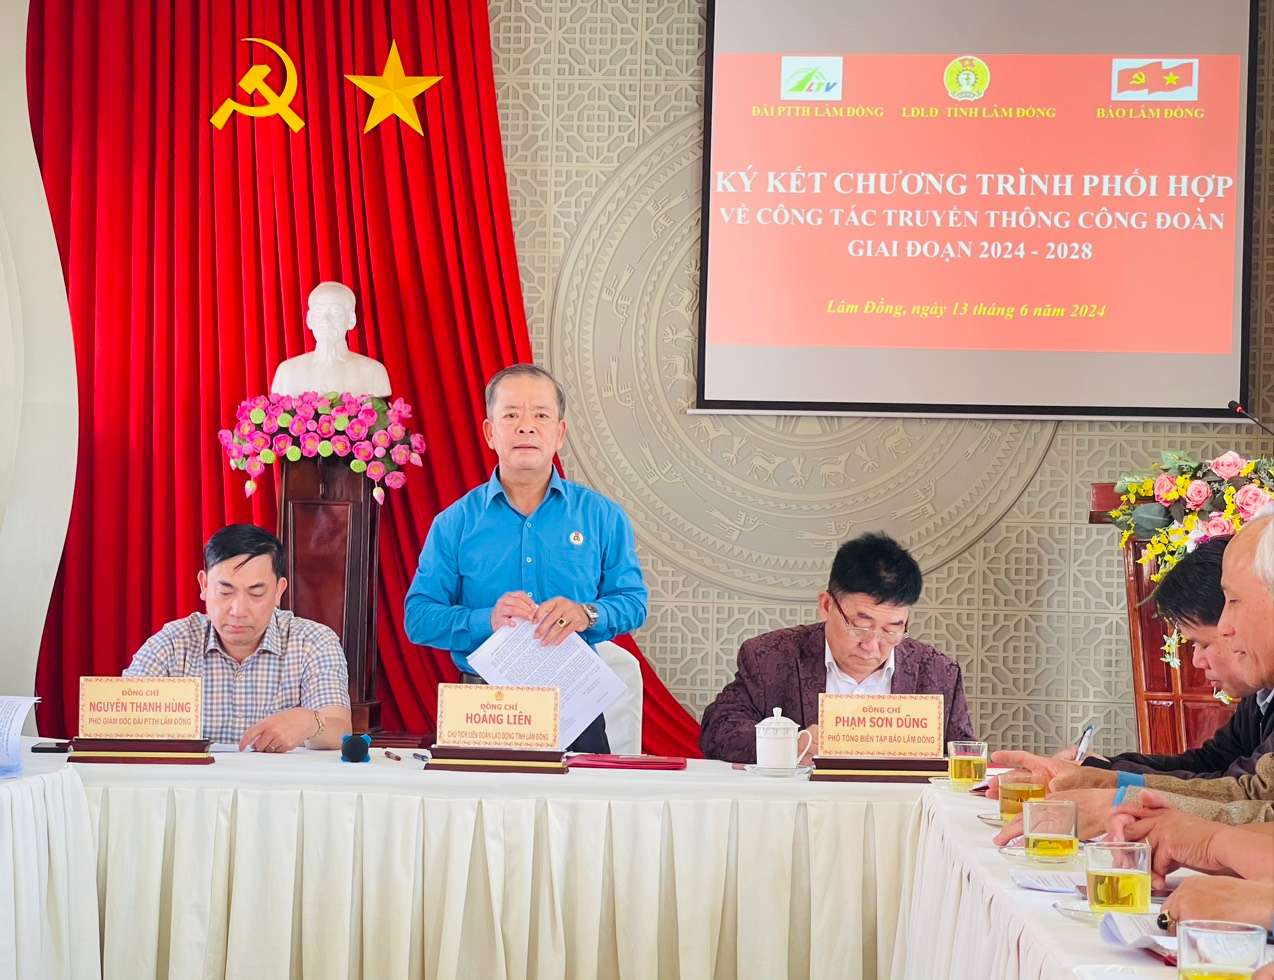 Hội nghị ký kết chương trình phối hợp về công tác truyền thông Công đoàn giai đoạn 2024-2028 tại TP Đà Lạt, tỉnh Lâm Đồng. Ảnh: Mai Hương